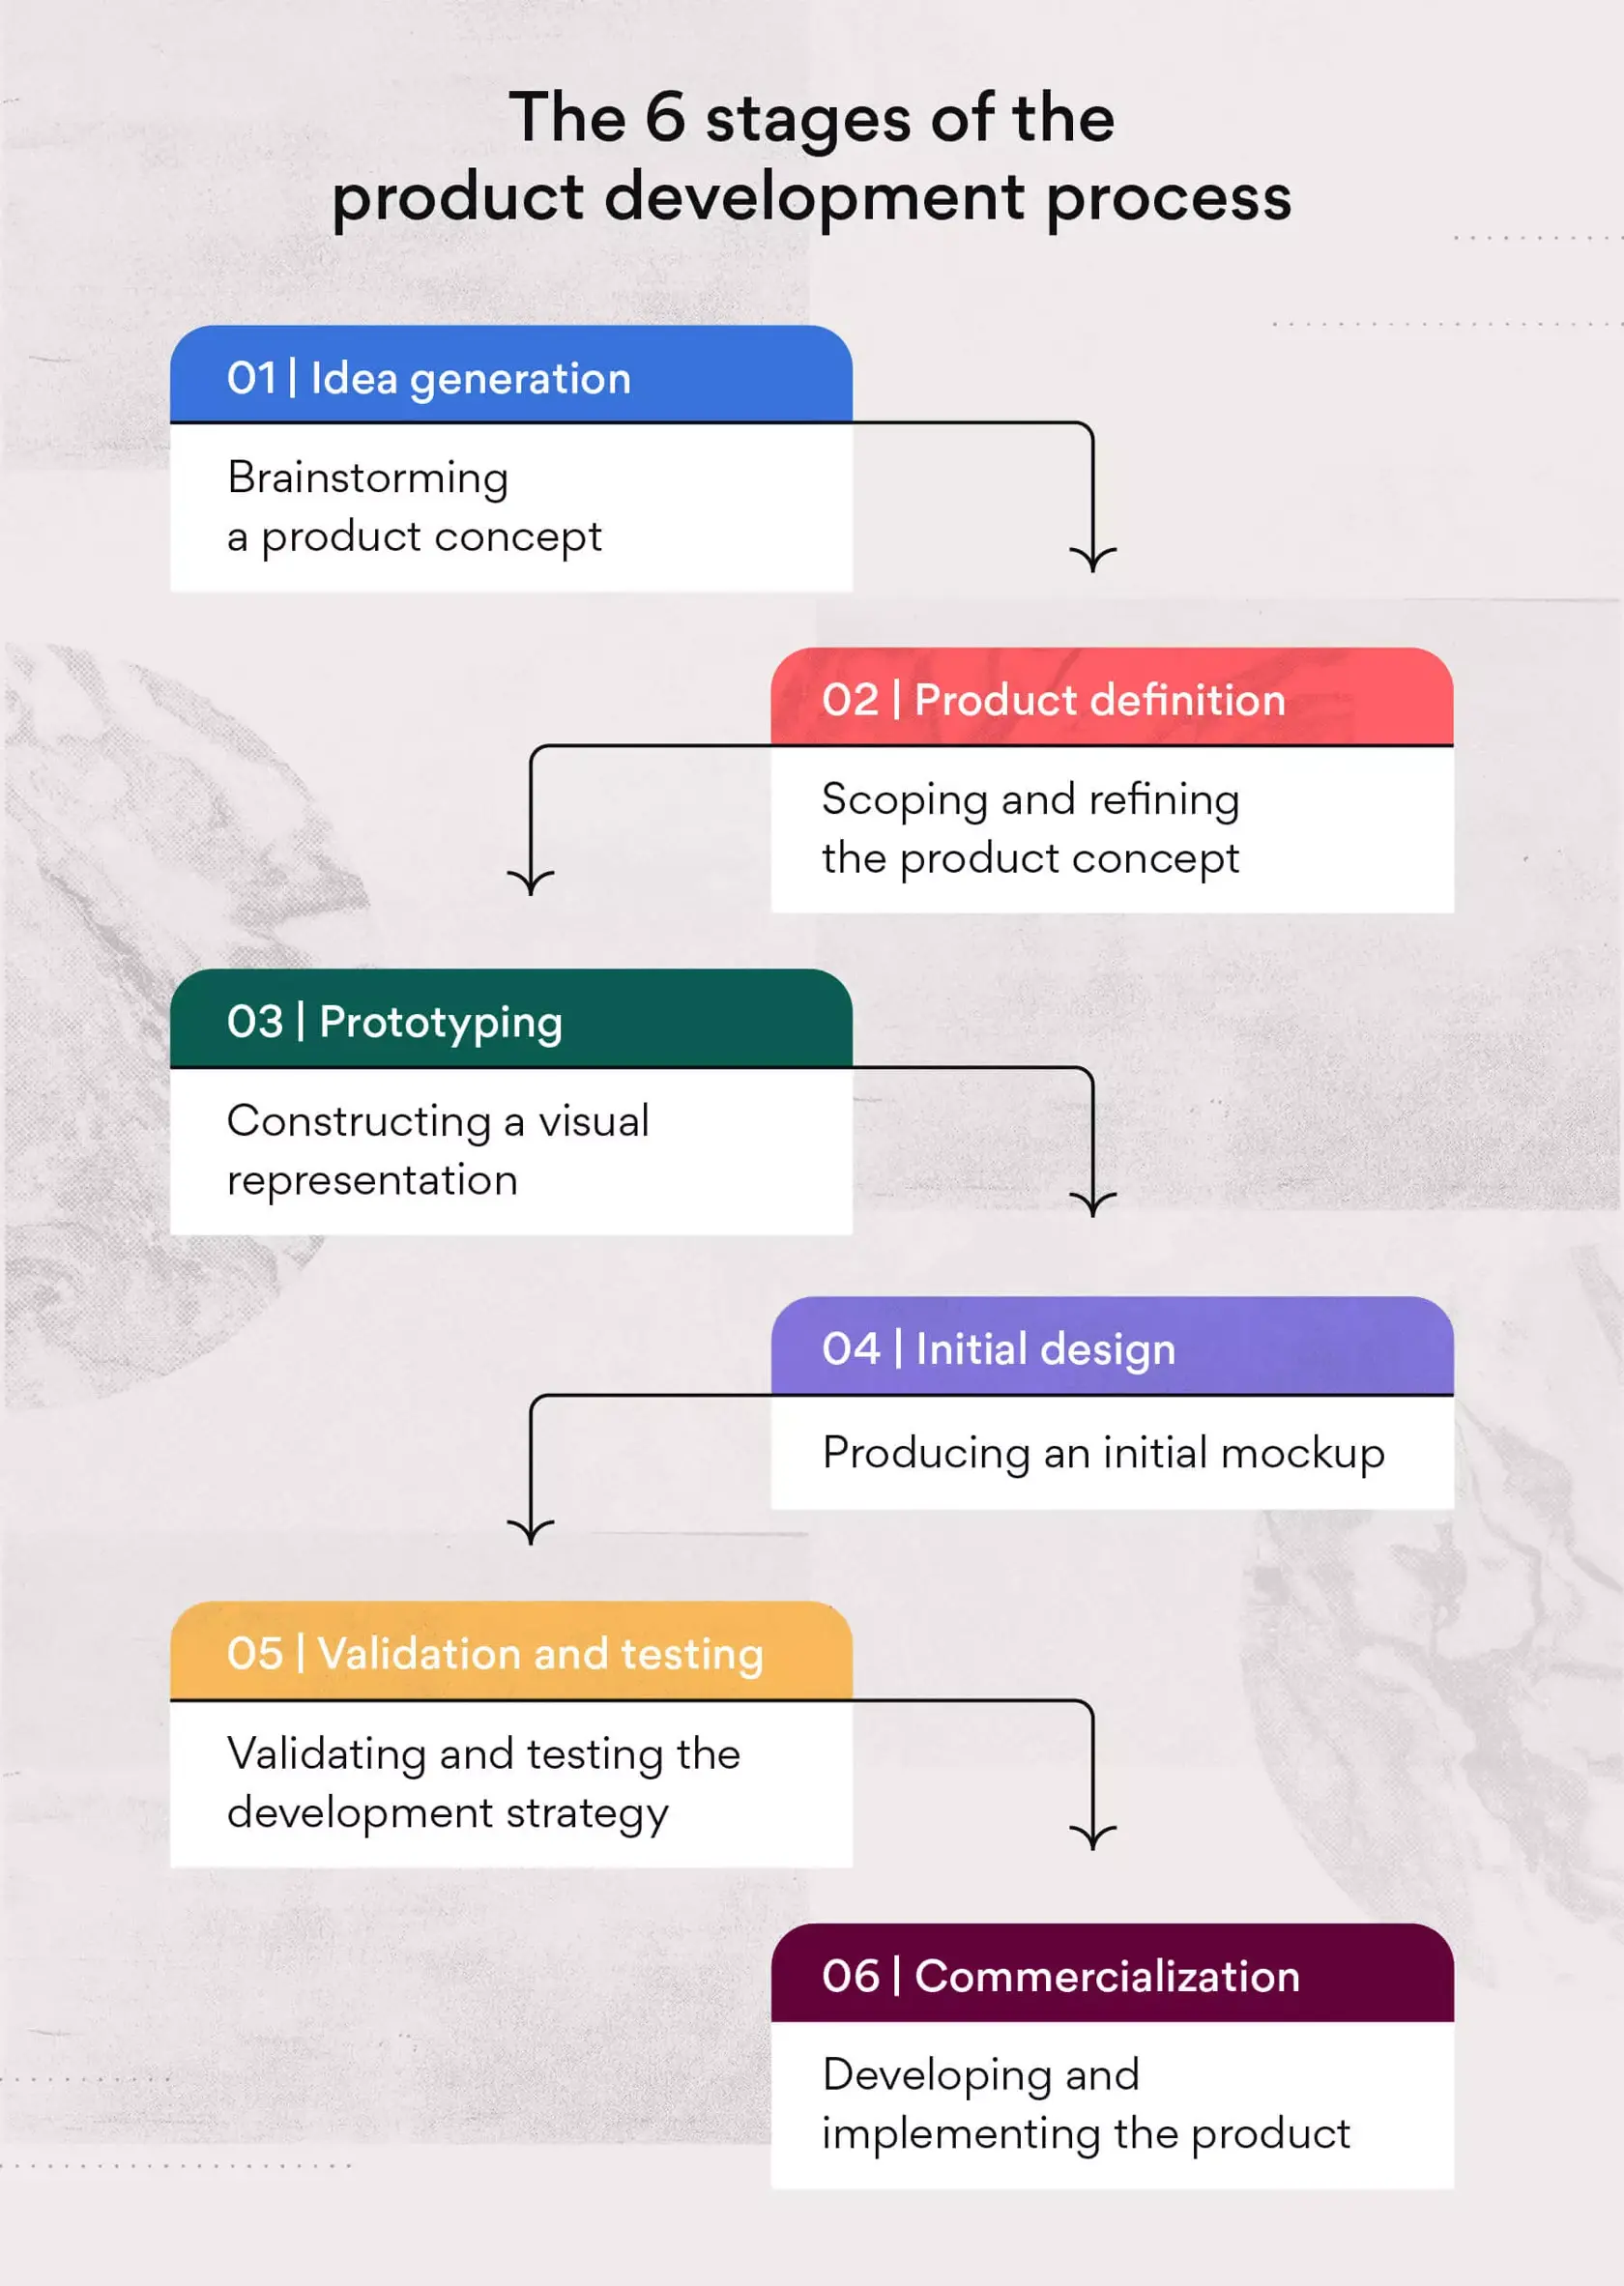 De sex faserna i produktutvecklingsprocessen